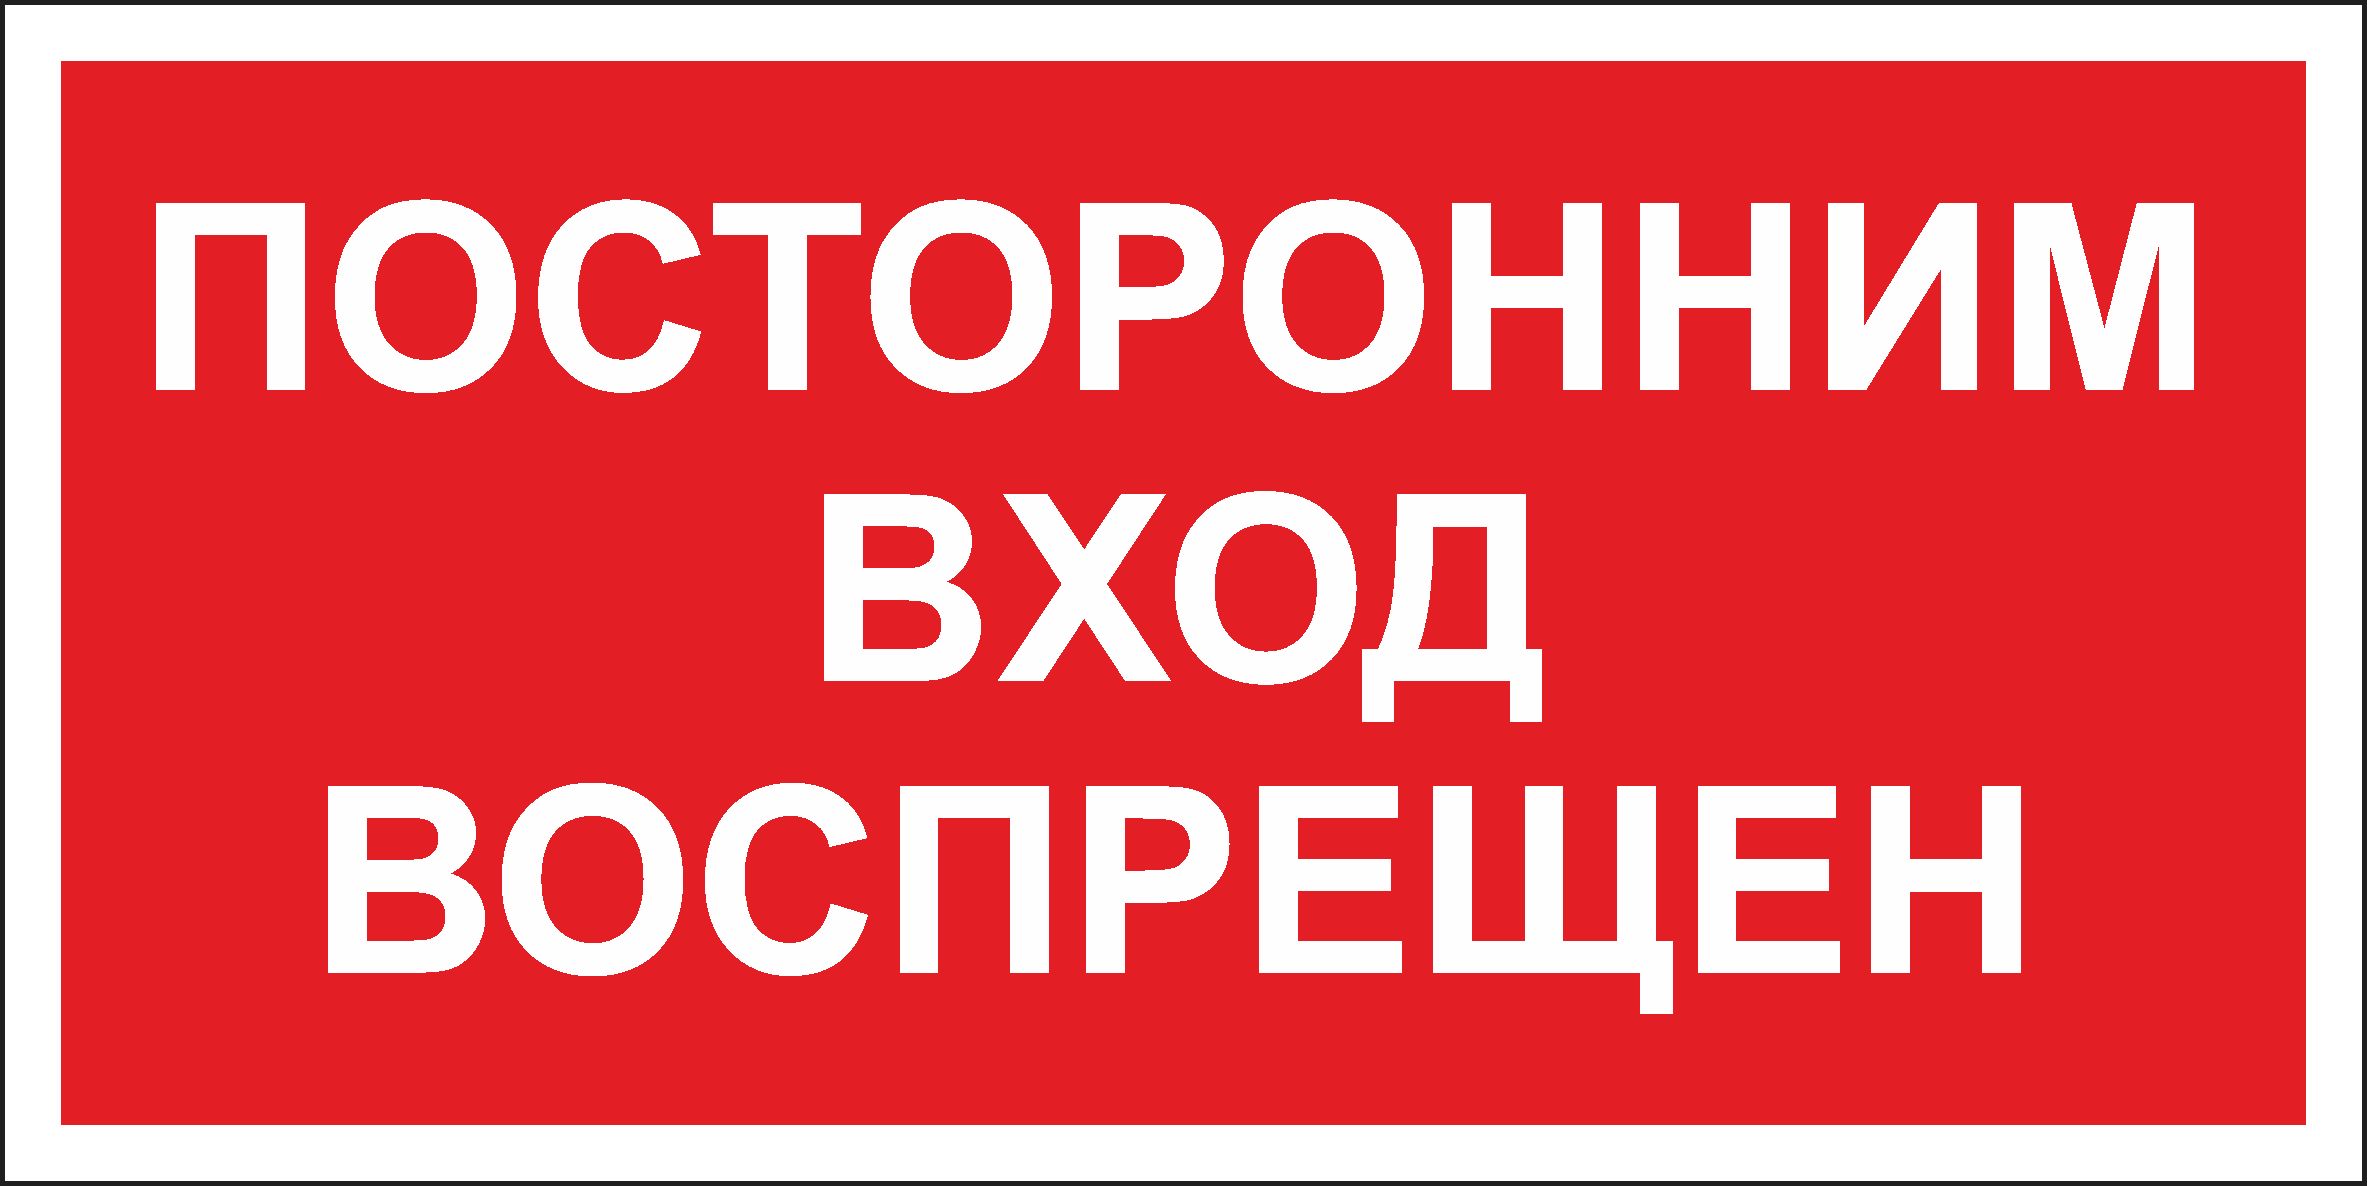 вход запрещен картинки с надписью